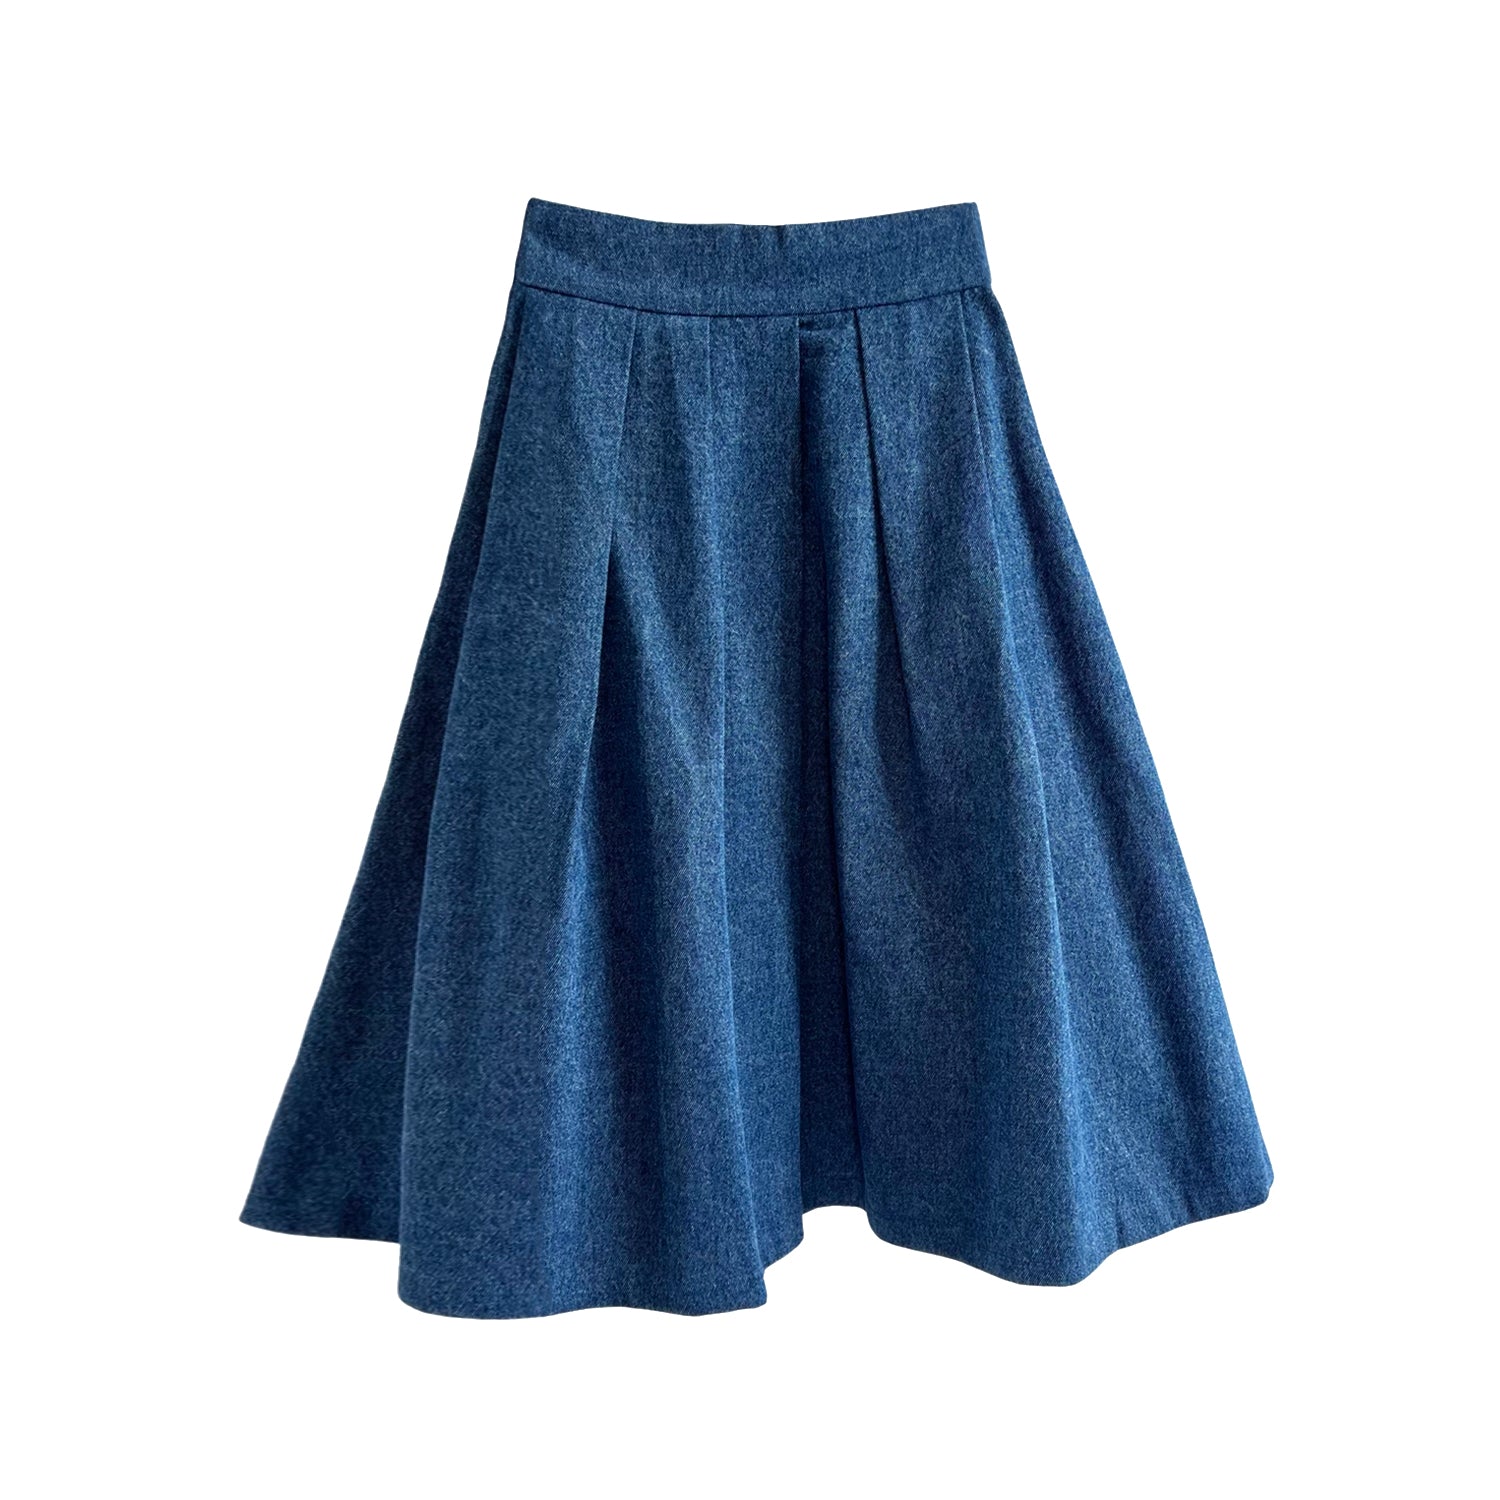 Full Midi Skirt in Blue Denim